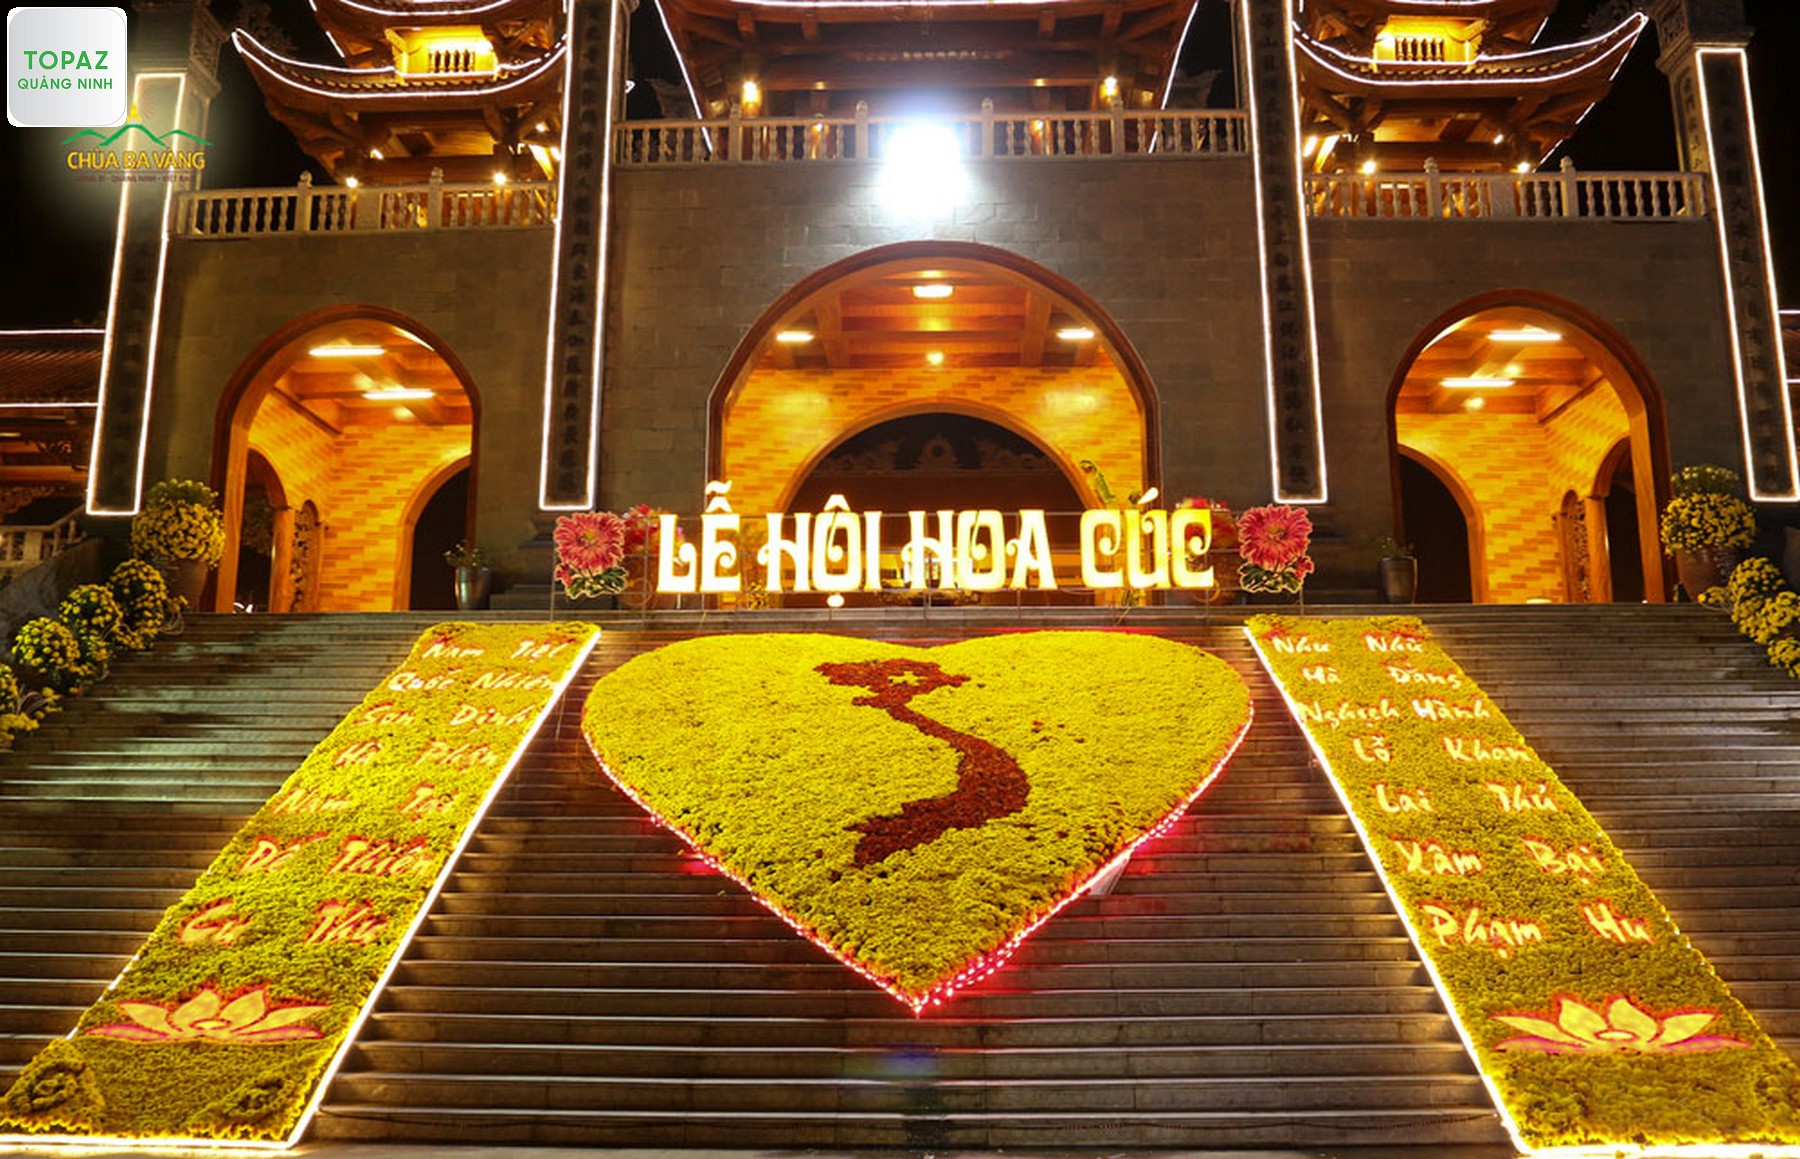 Đại cảnh khu vực Cổng Tam Quan Nội tại Lễ hội Hoa Cúc chùa Ba Vàng năm 2016